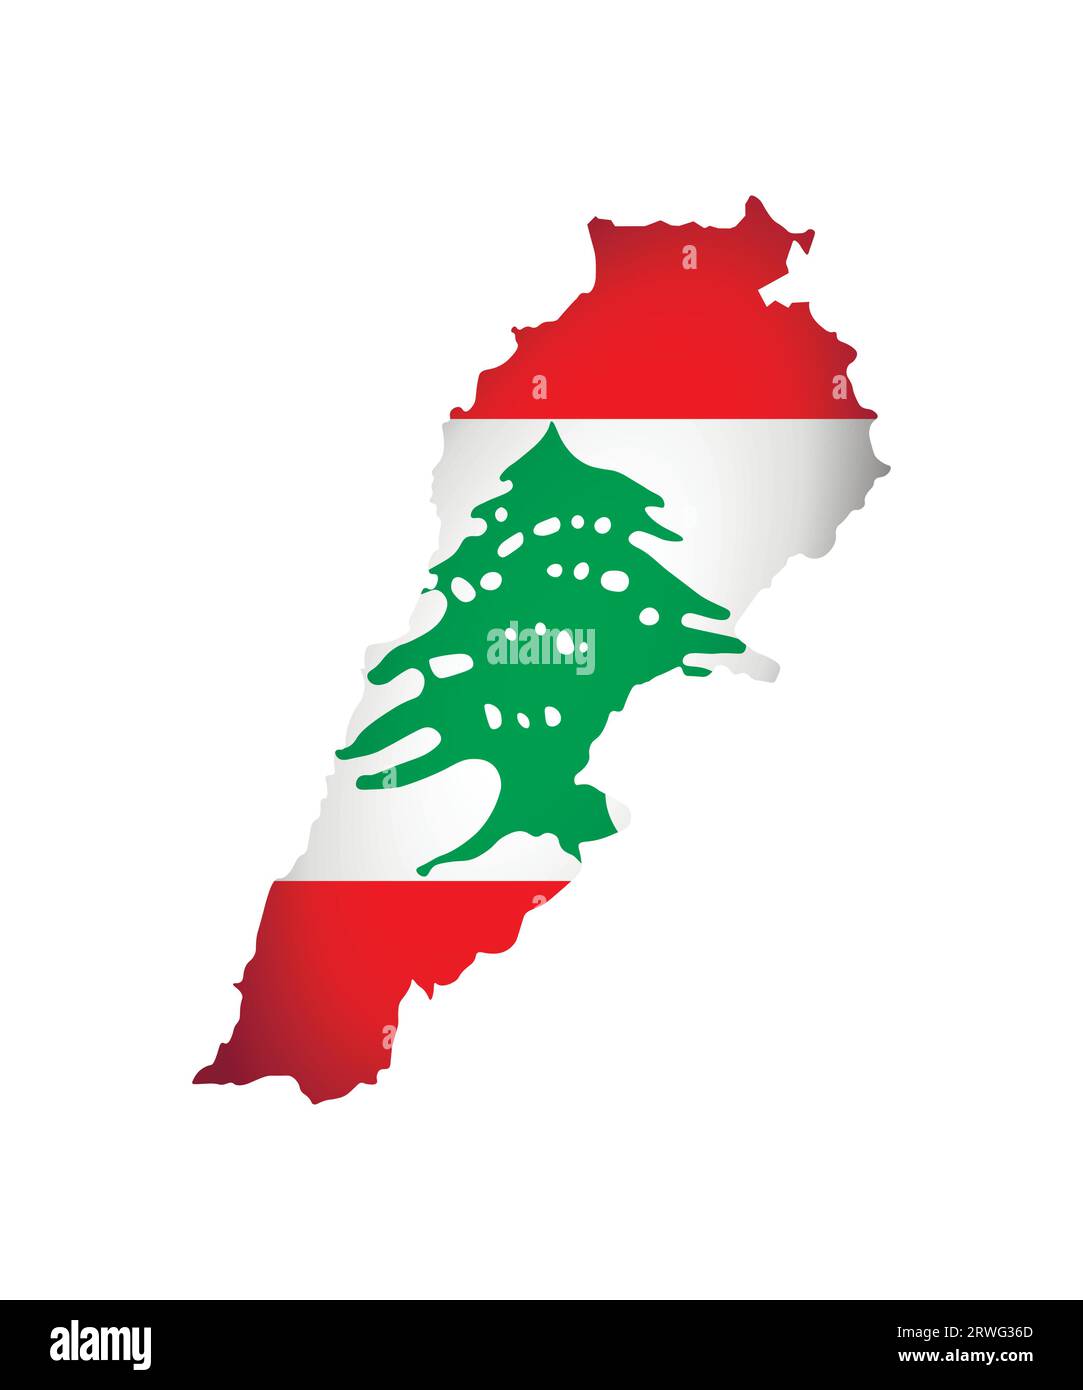 Illustration vectorielle avec drapeau national et carte (forme simplifiée) du Liban (République libanaise). Ombre de volume sur la carte. Illustration de Vecteur